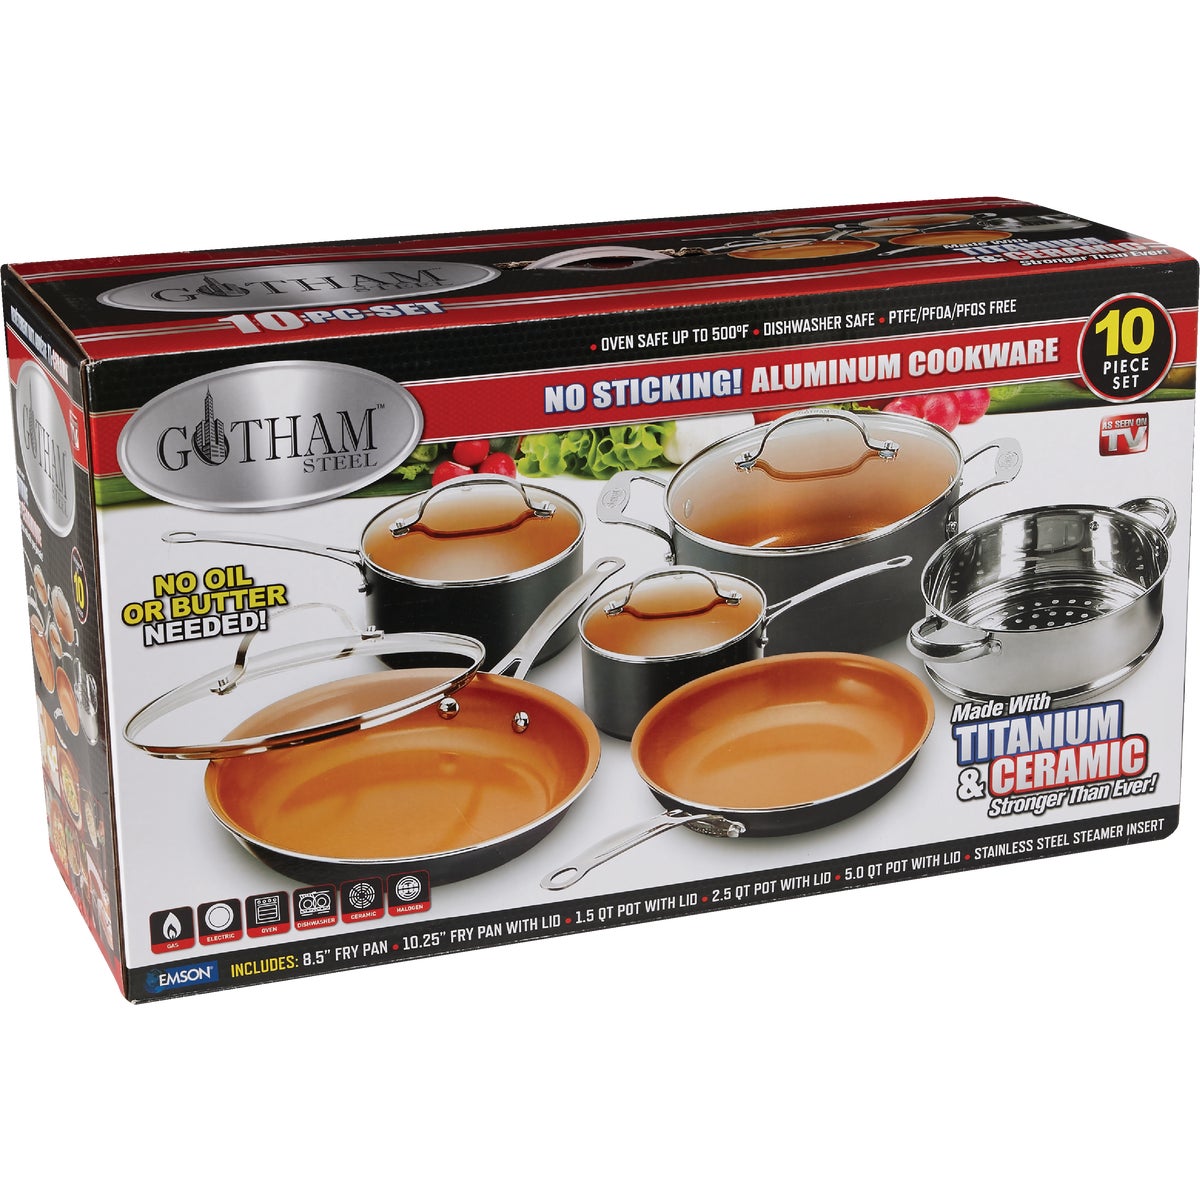 As Seen On TV Gotham Steel 11 Stainless Steel & Ceramic Frying Pan